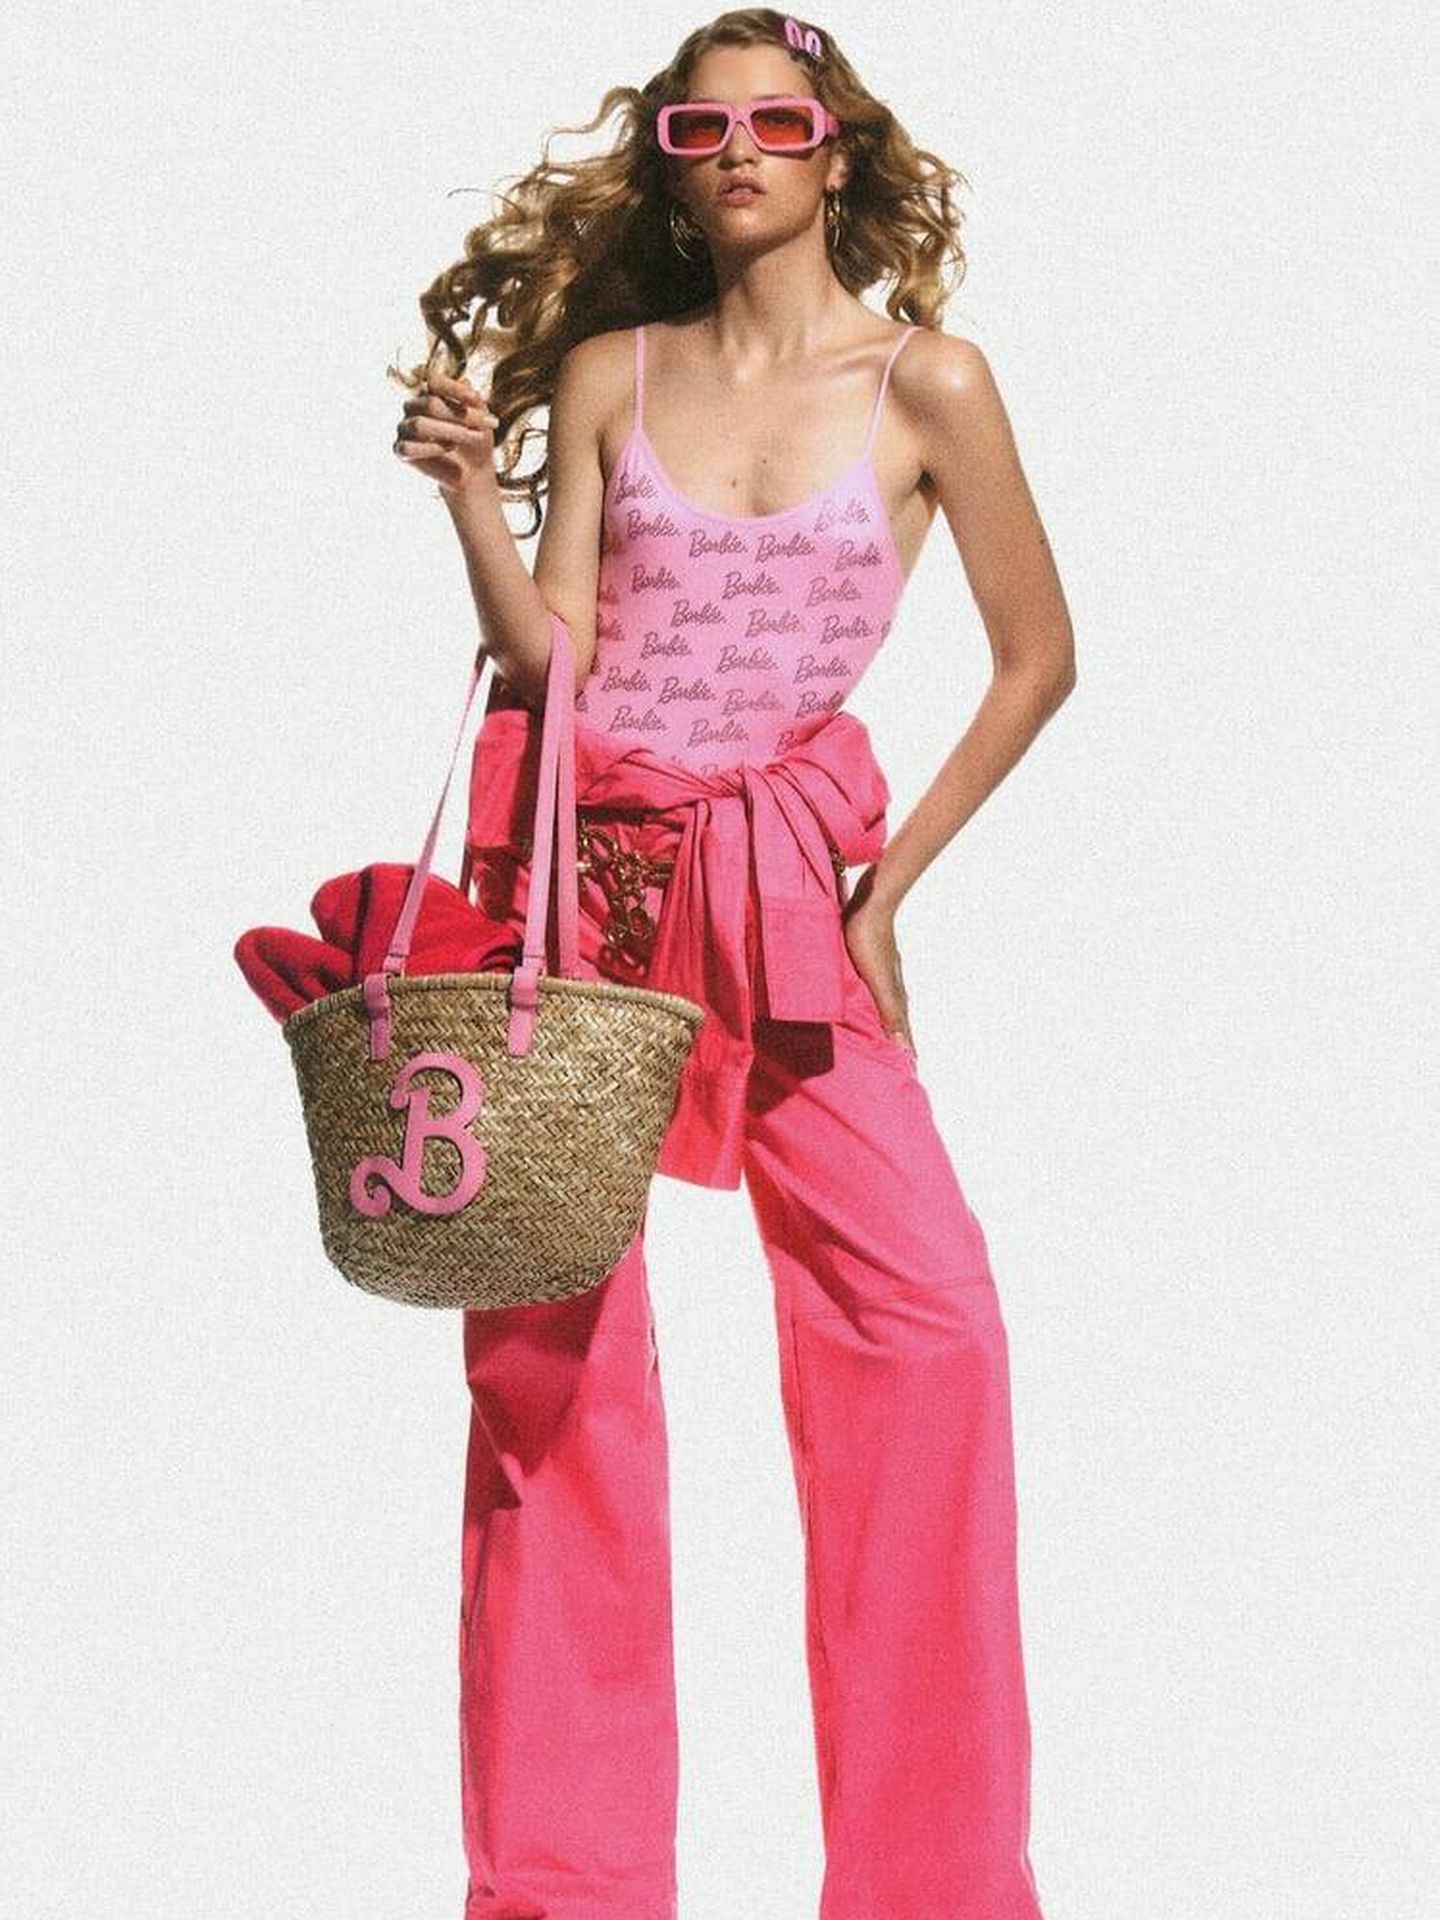 Bañador y otra serie de prendas creadas por Zara en la edición limitada con motivo de la película 'Barbie'. (Cortesía)